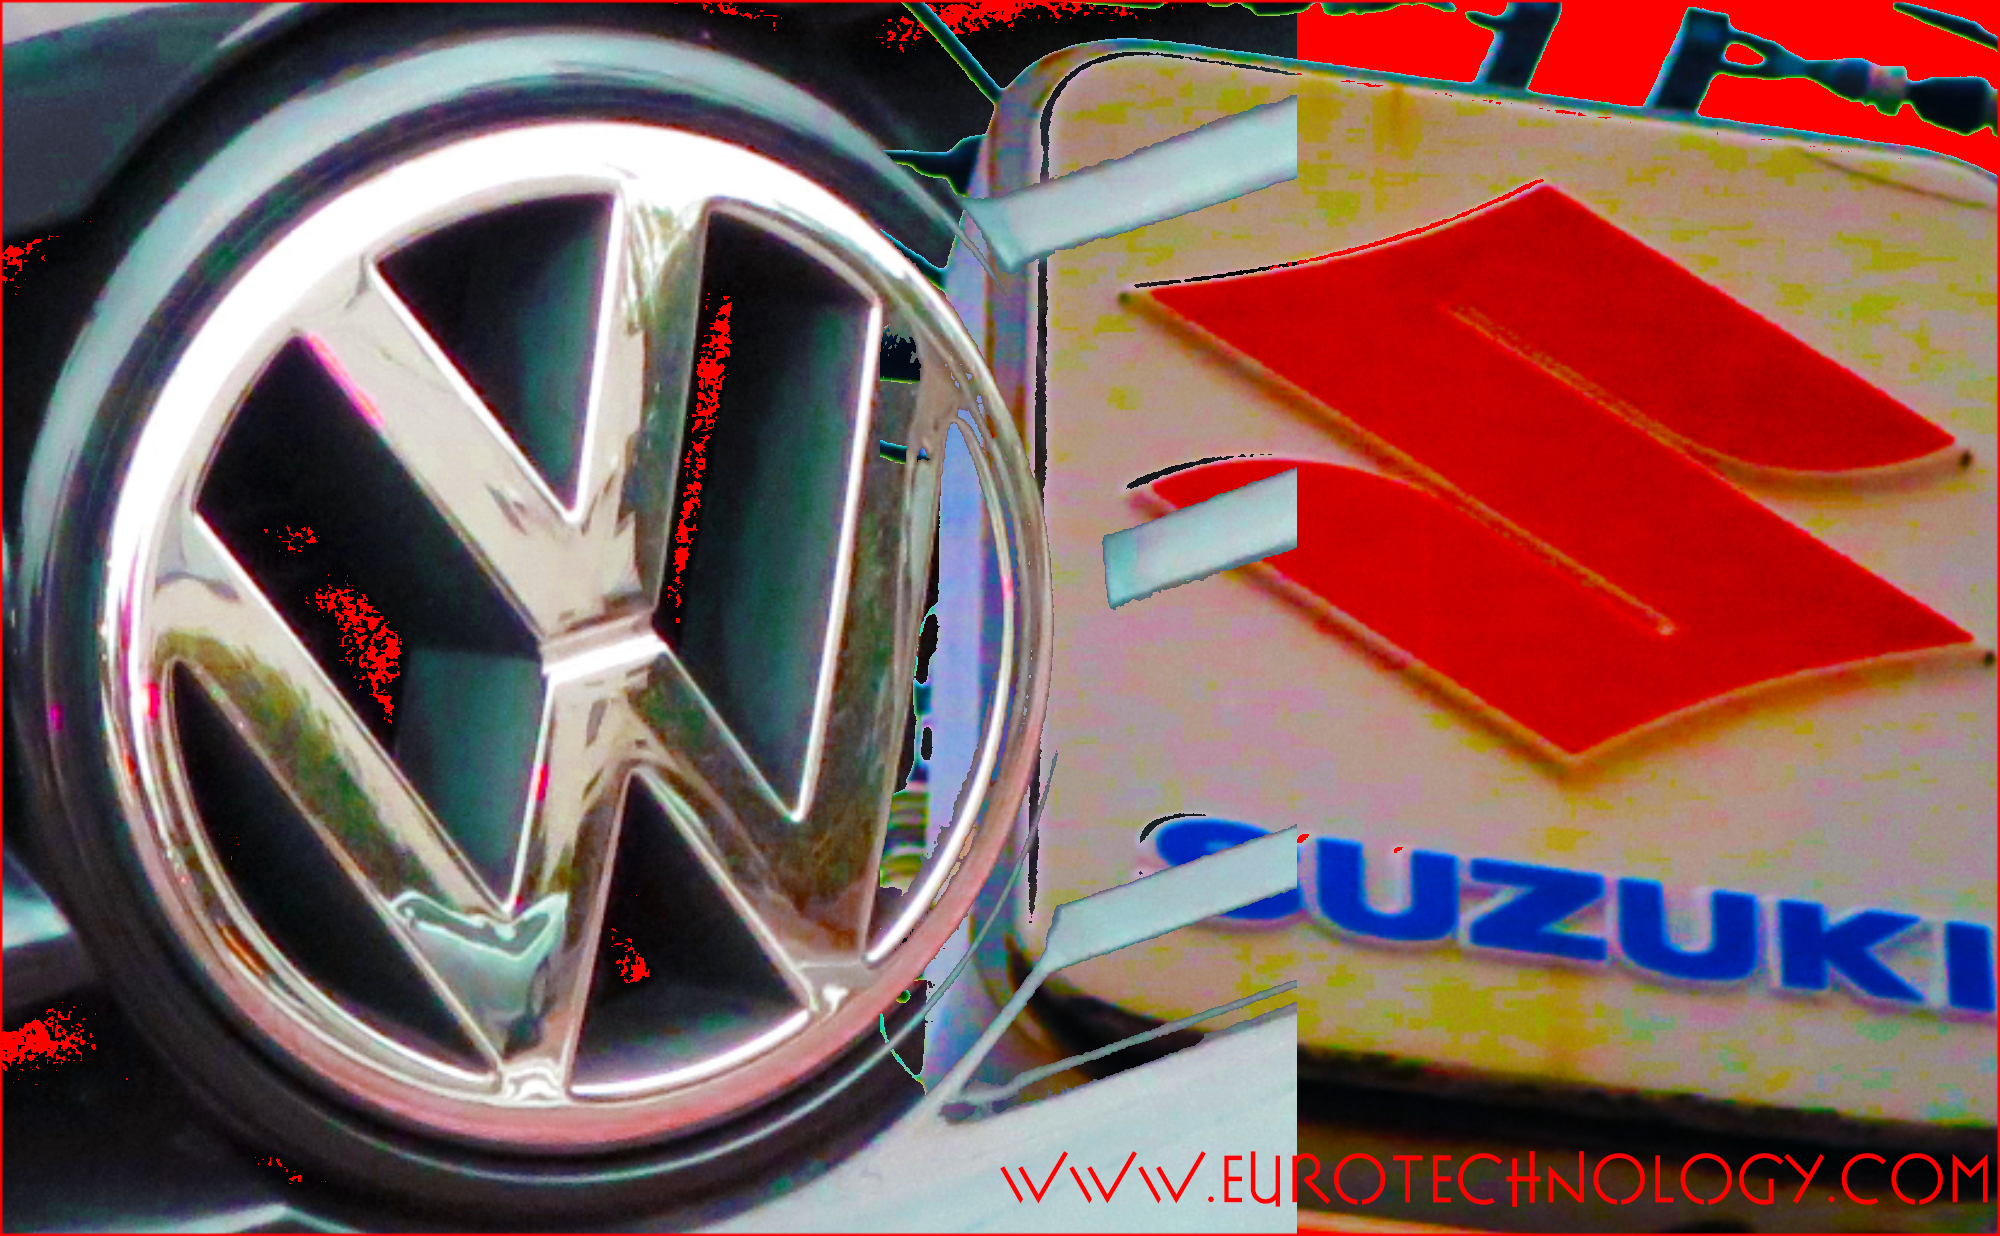 Was Osamu Suzuki first to understand Volkswagen’s Diesel issues?